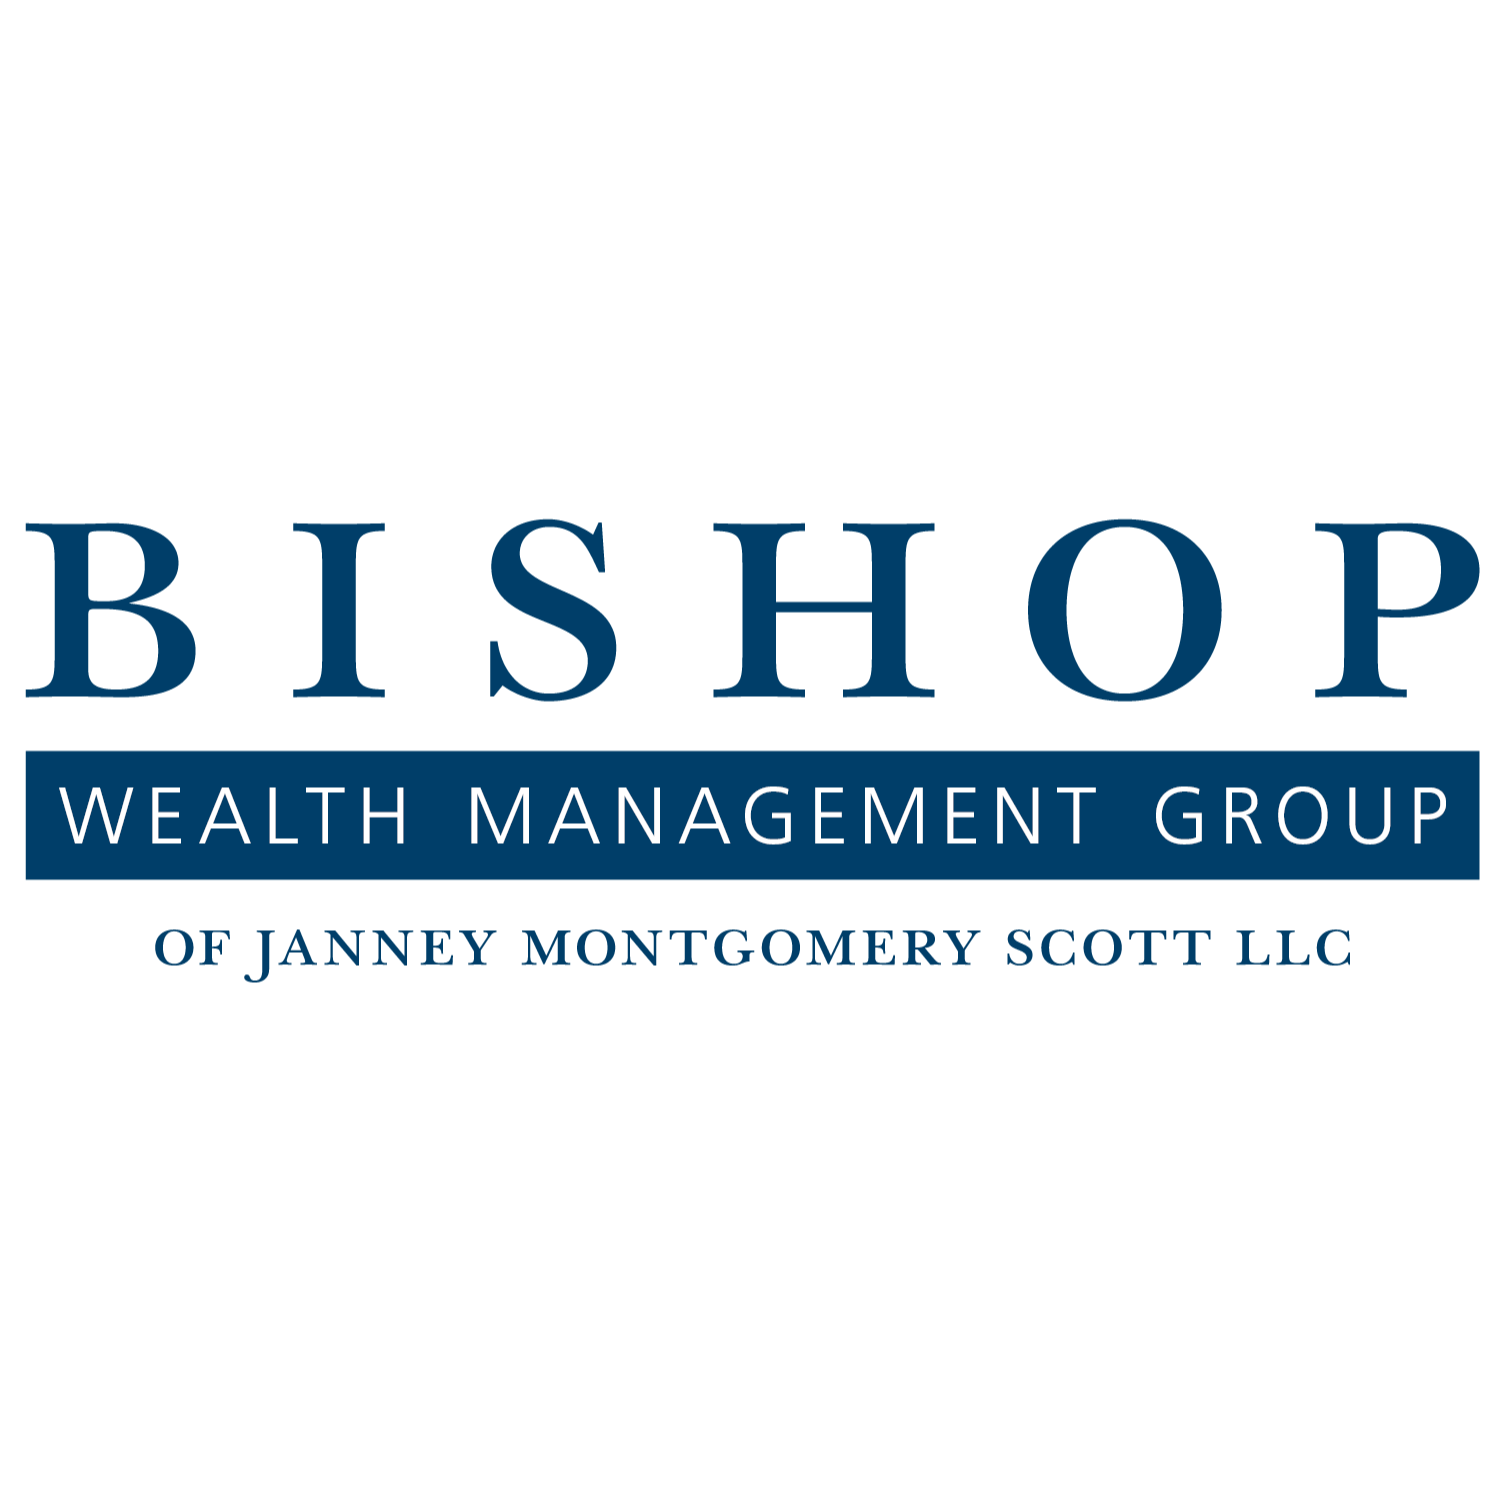 The Bishop Wealth Management Group of Janney Montgomery Scott